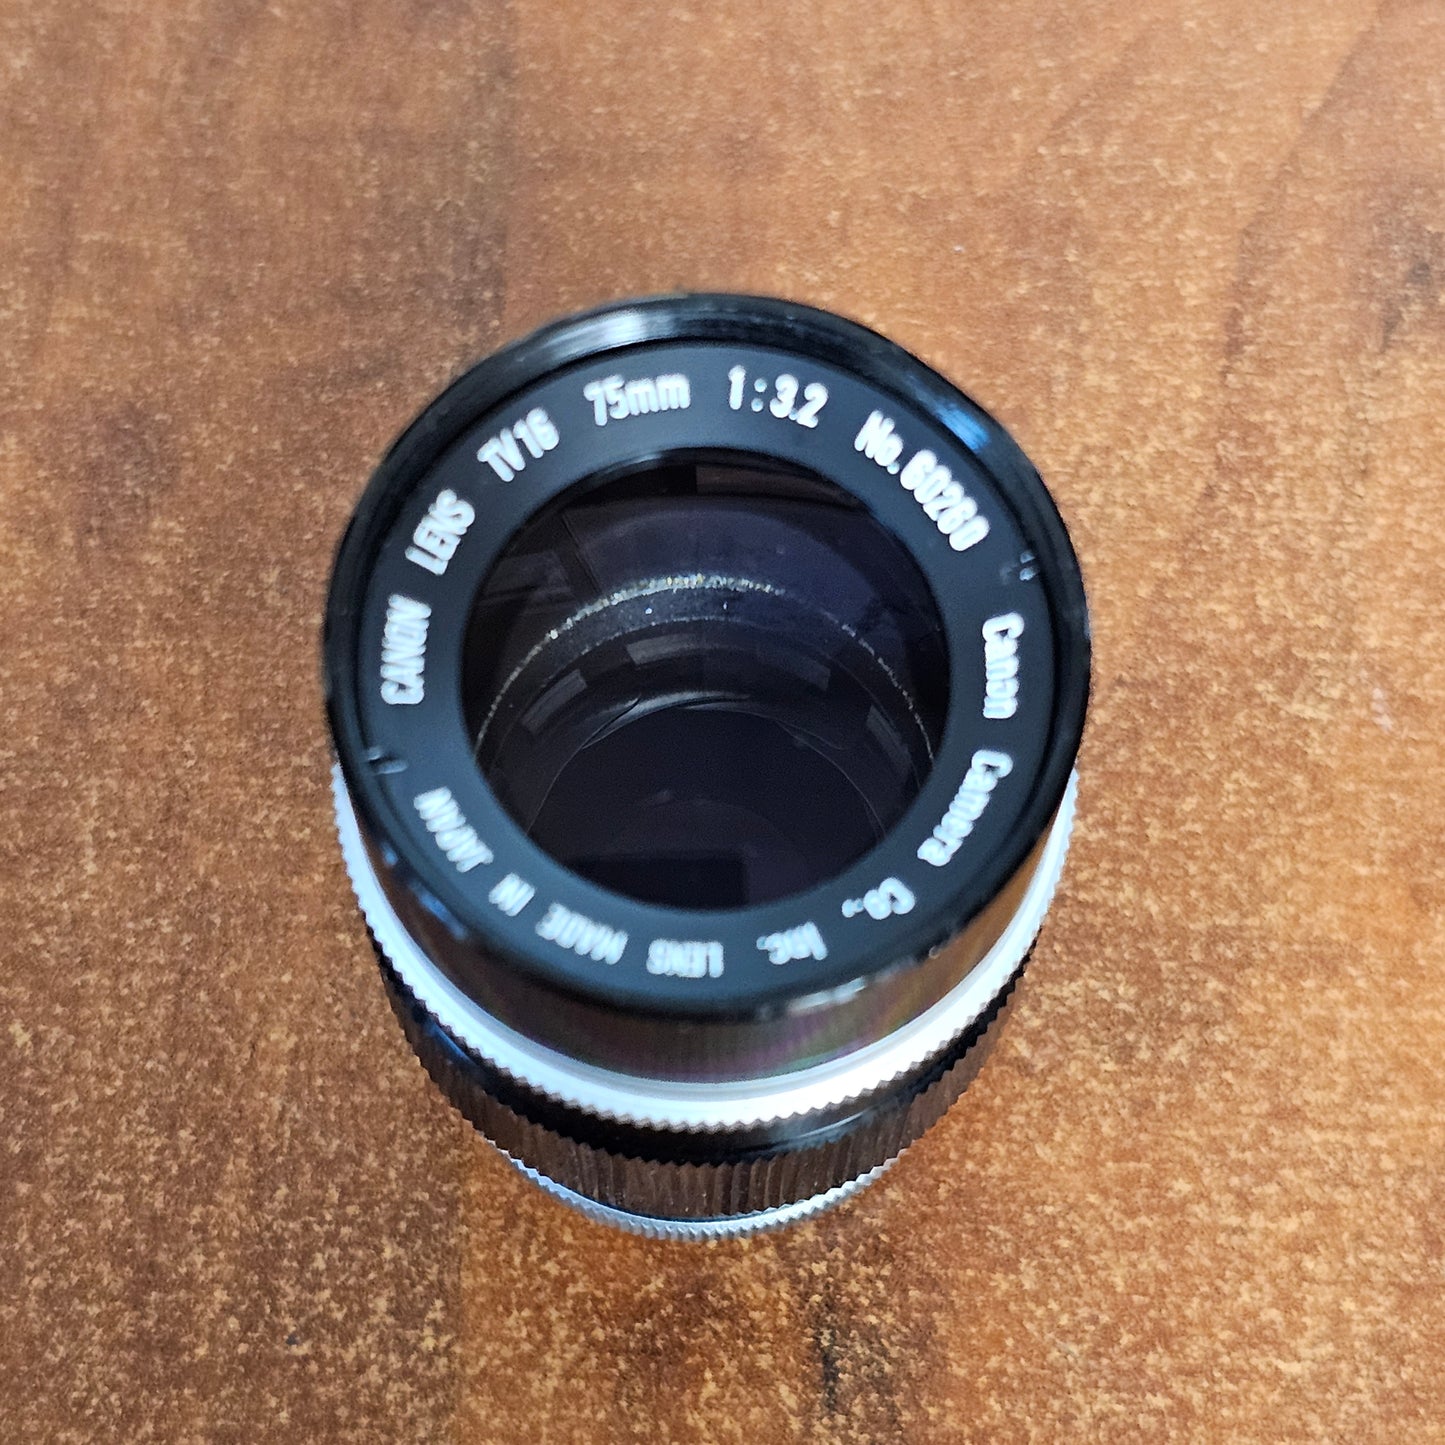 Canon TV-16 75mm T3.2 C-Mount lens S# 60260